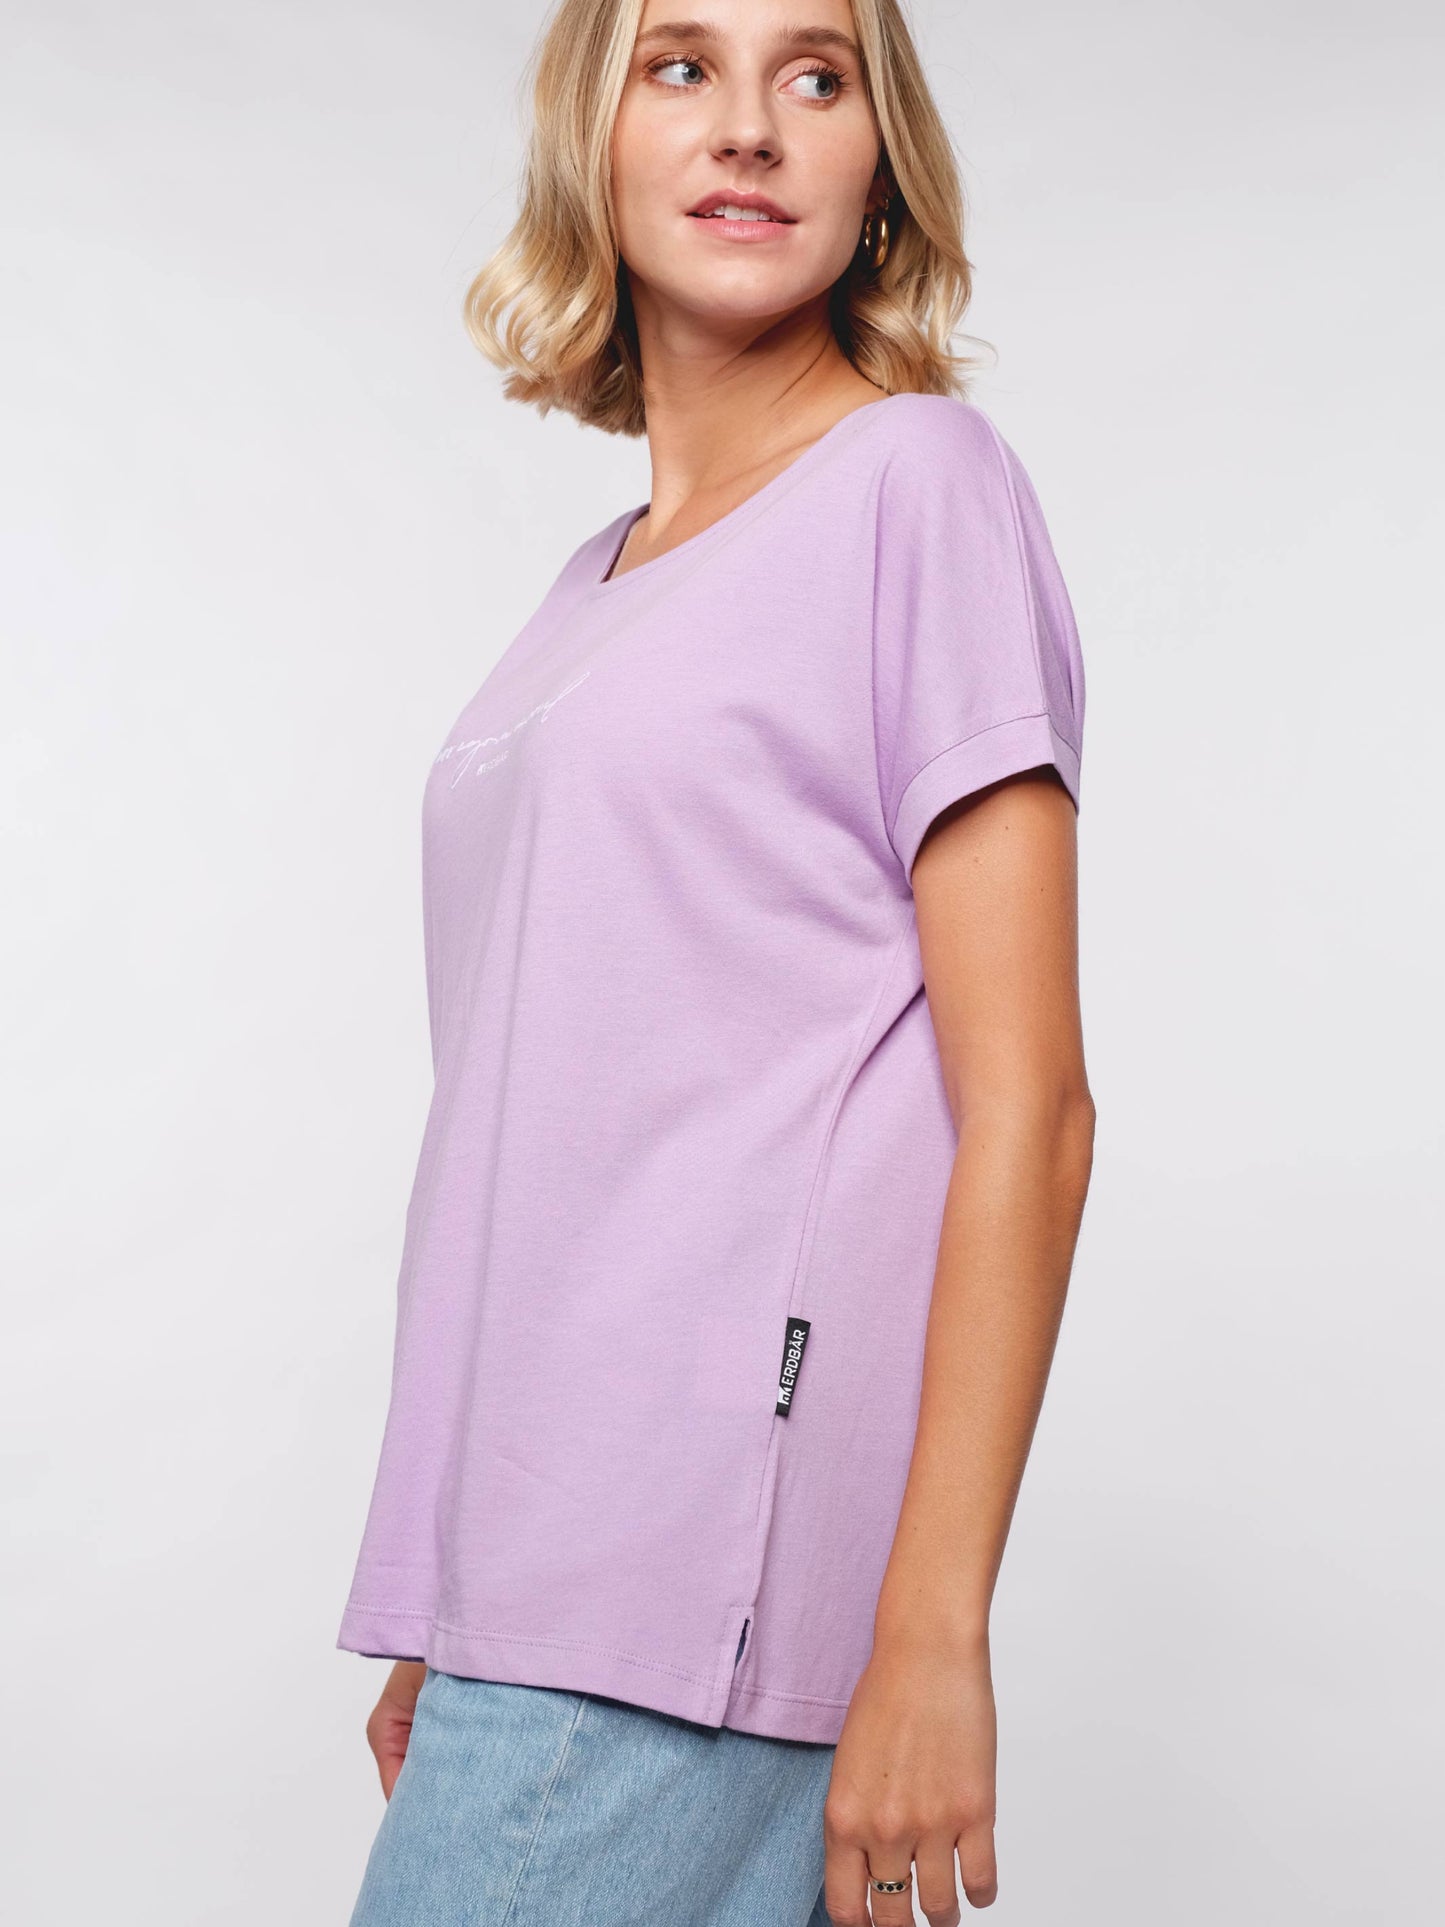 Damen T-Shirt WENIGER EGO MEHR SEELE (lavendel)